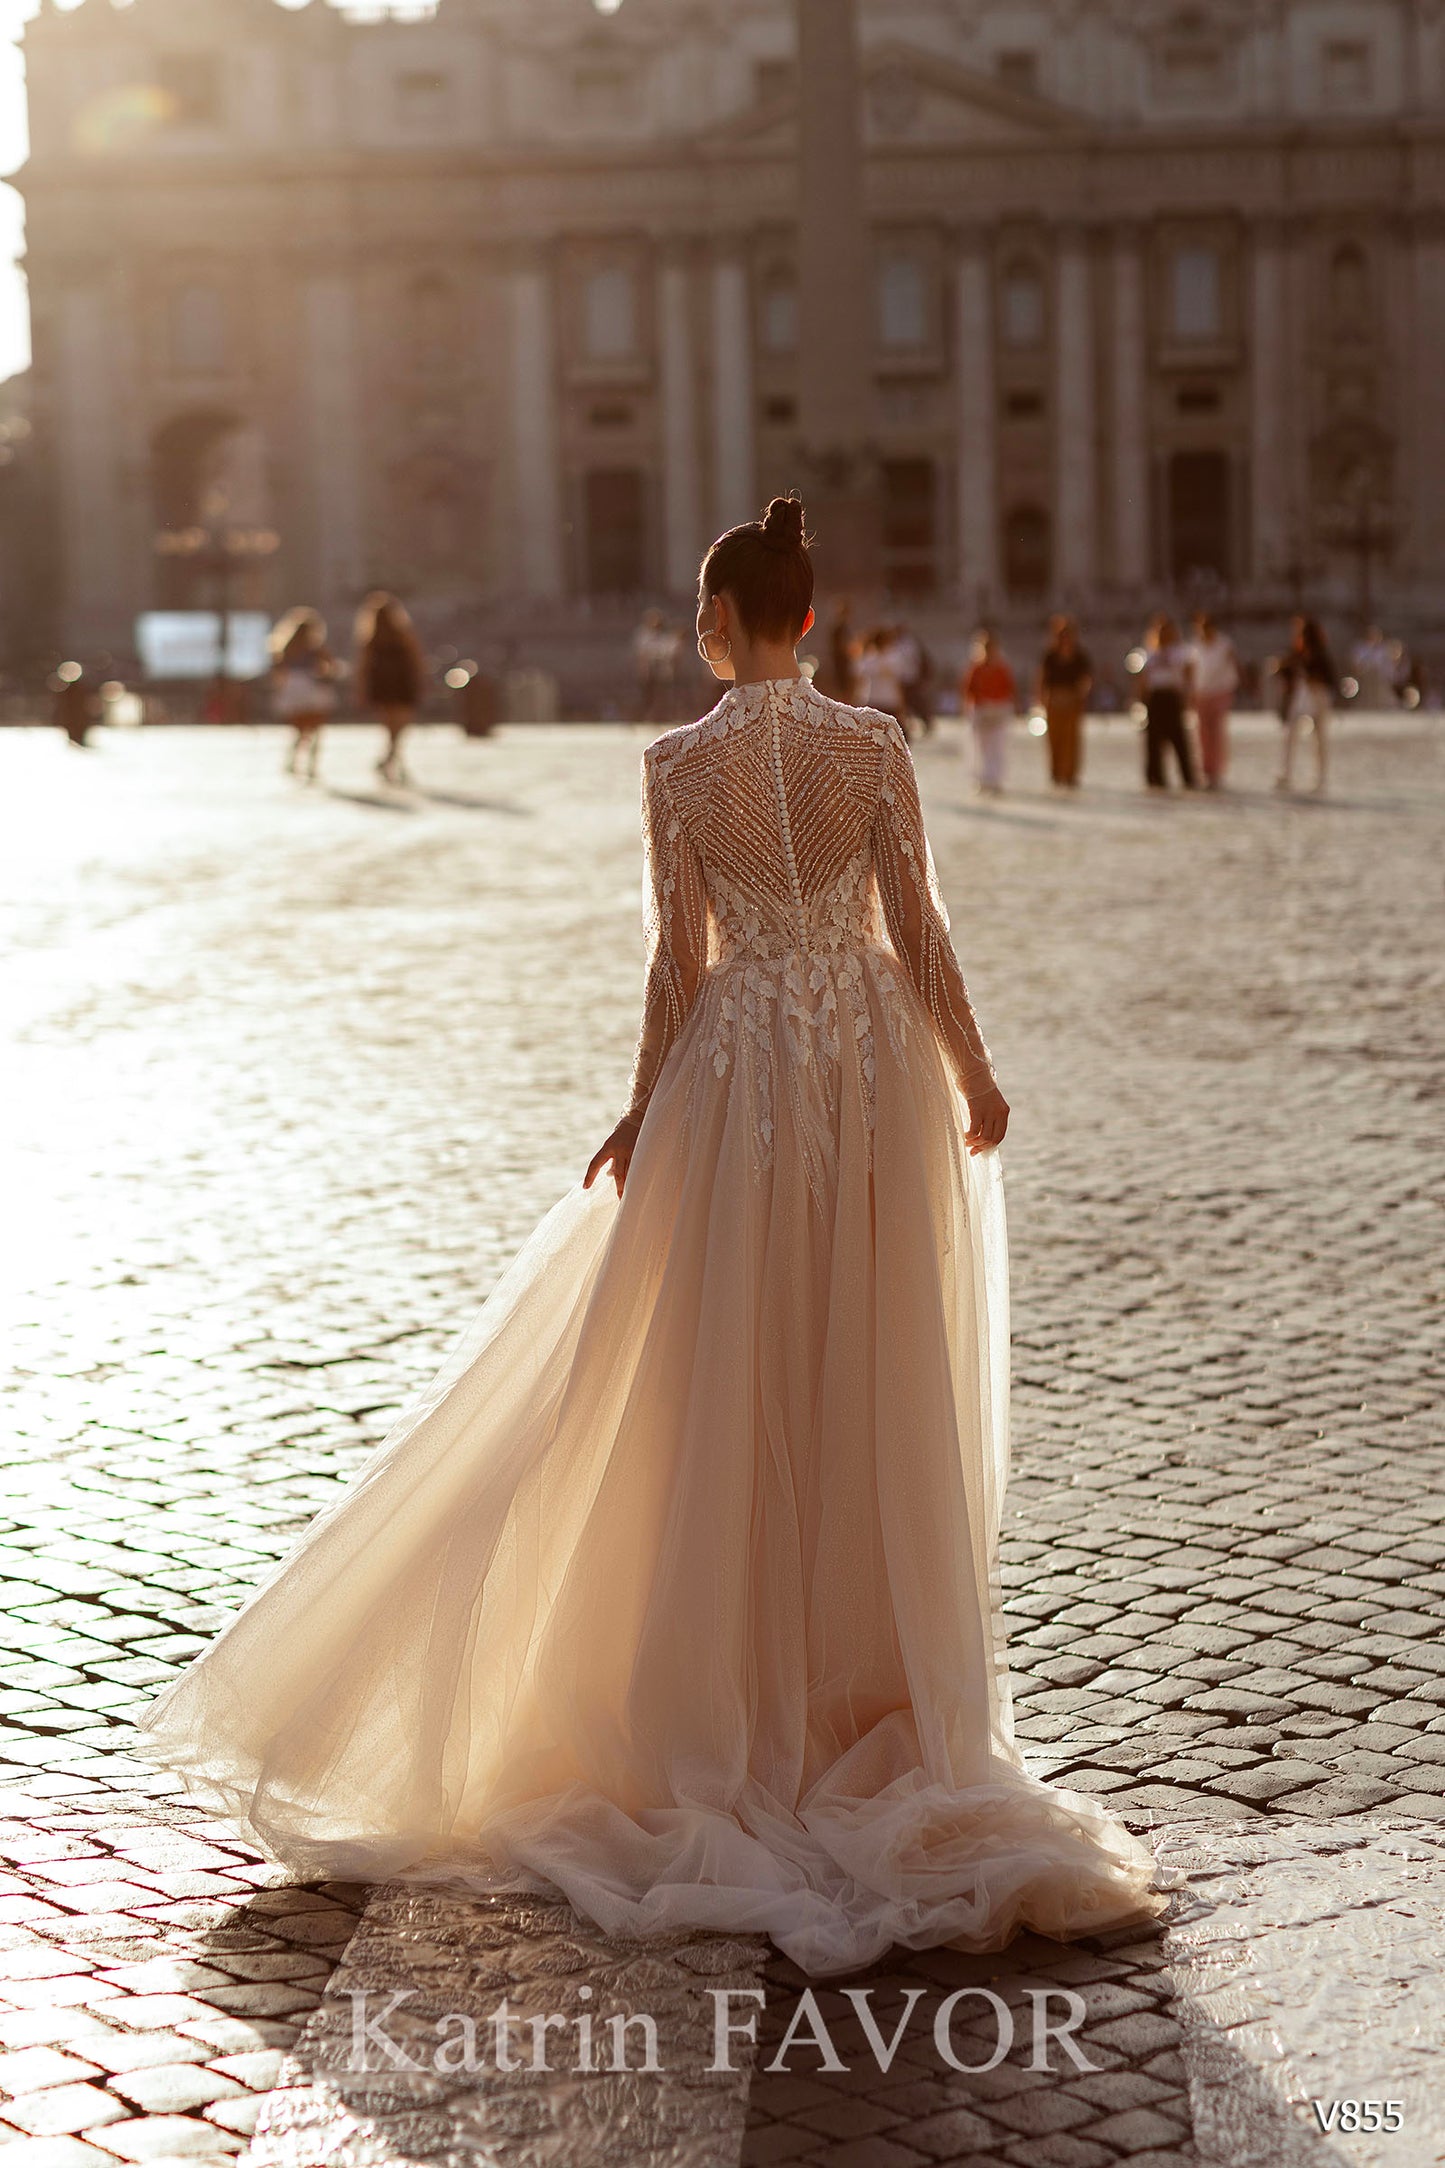 KatrinFAVORboutique-High neck long sleeve wedding dress